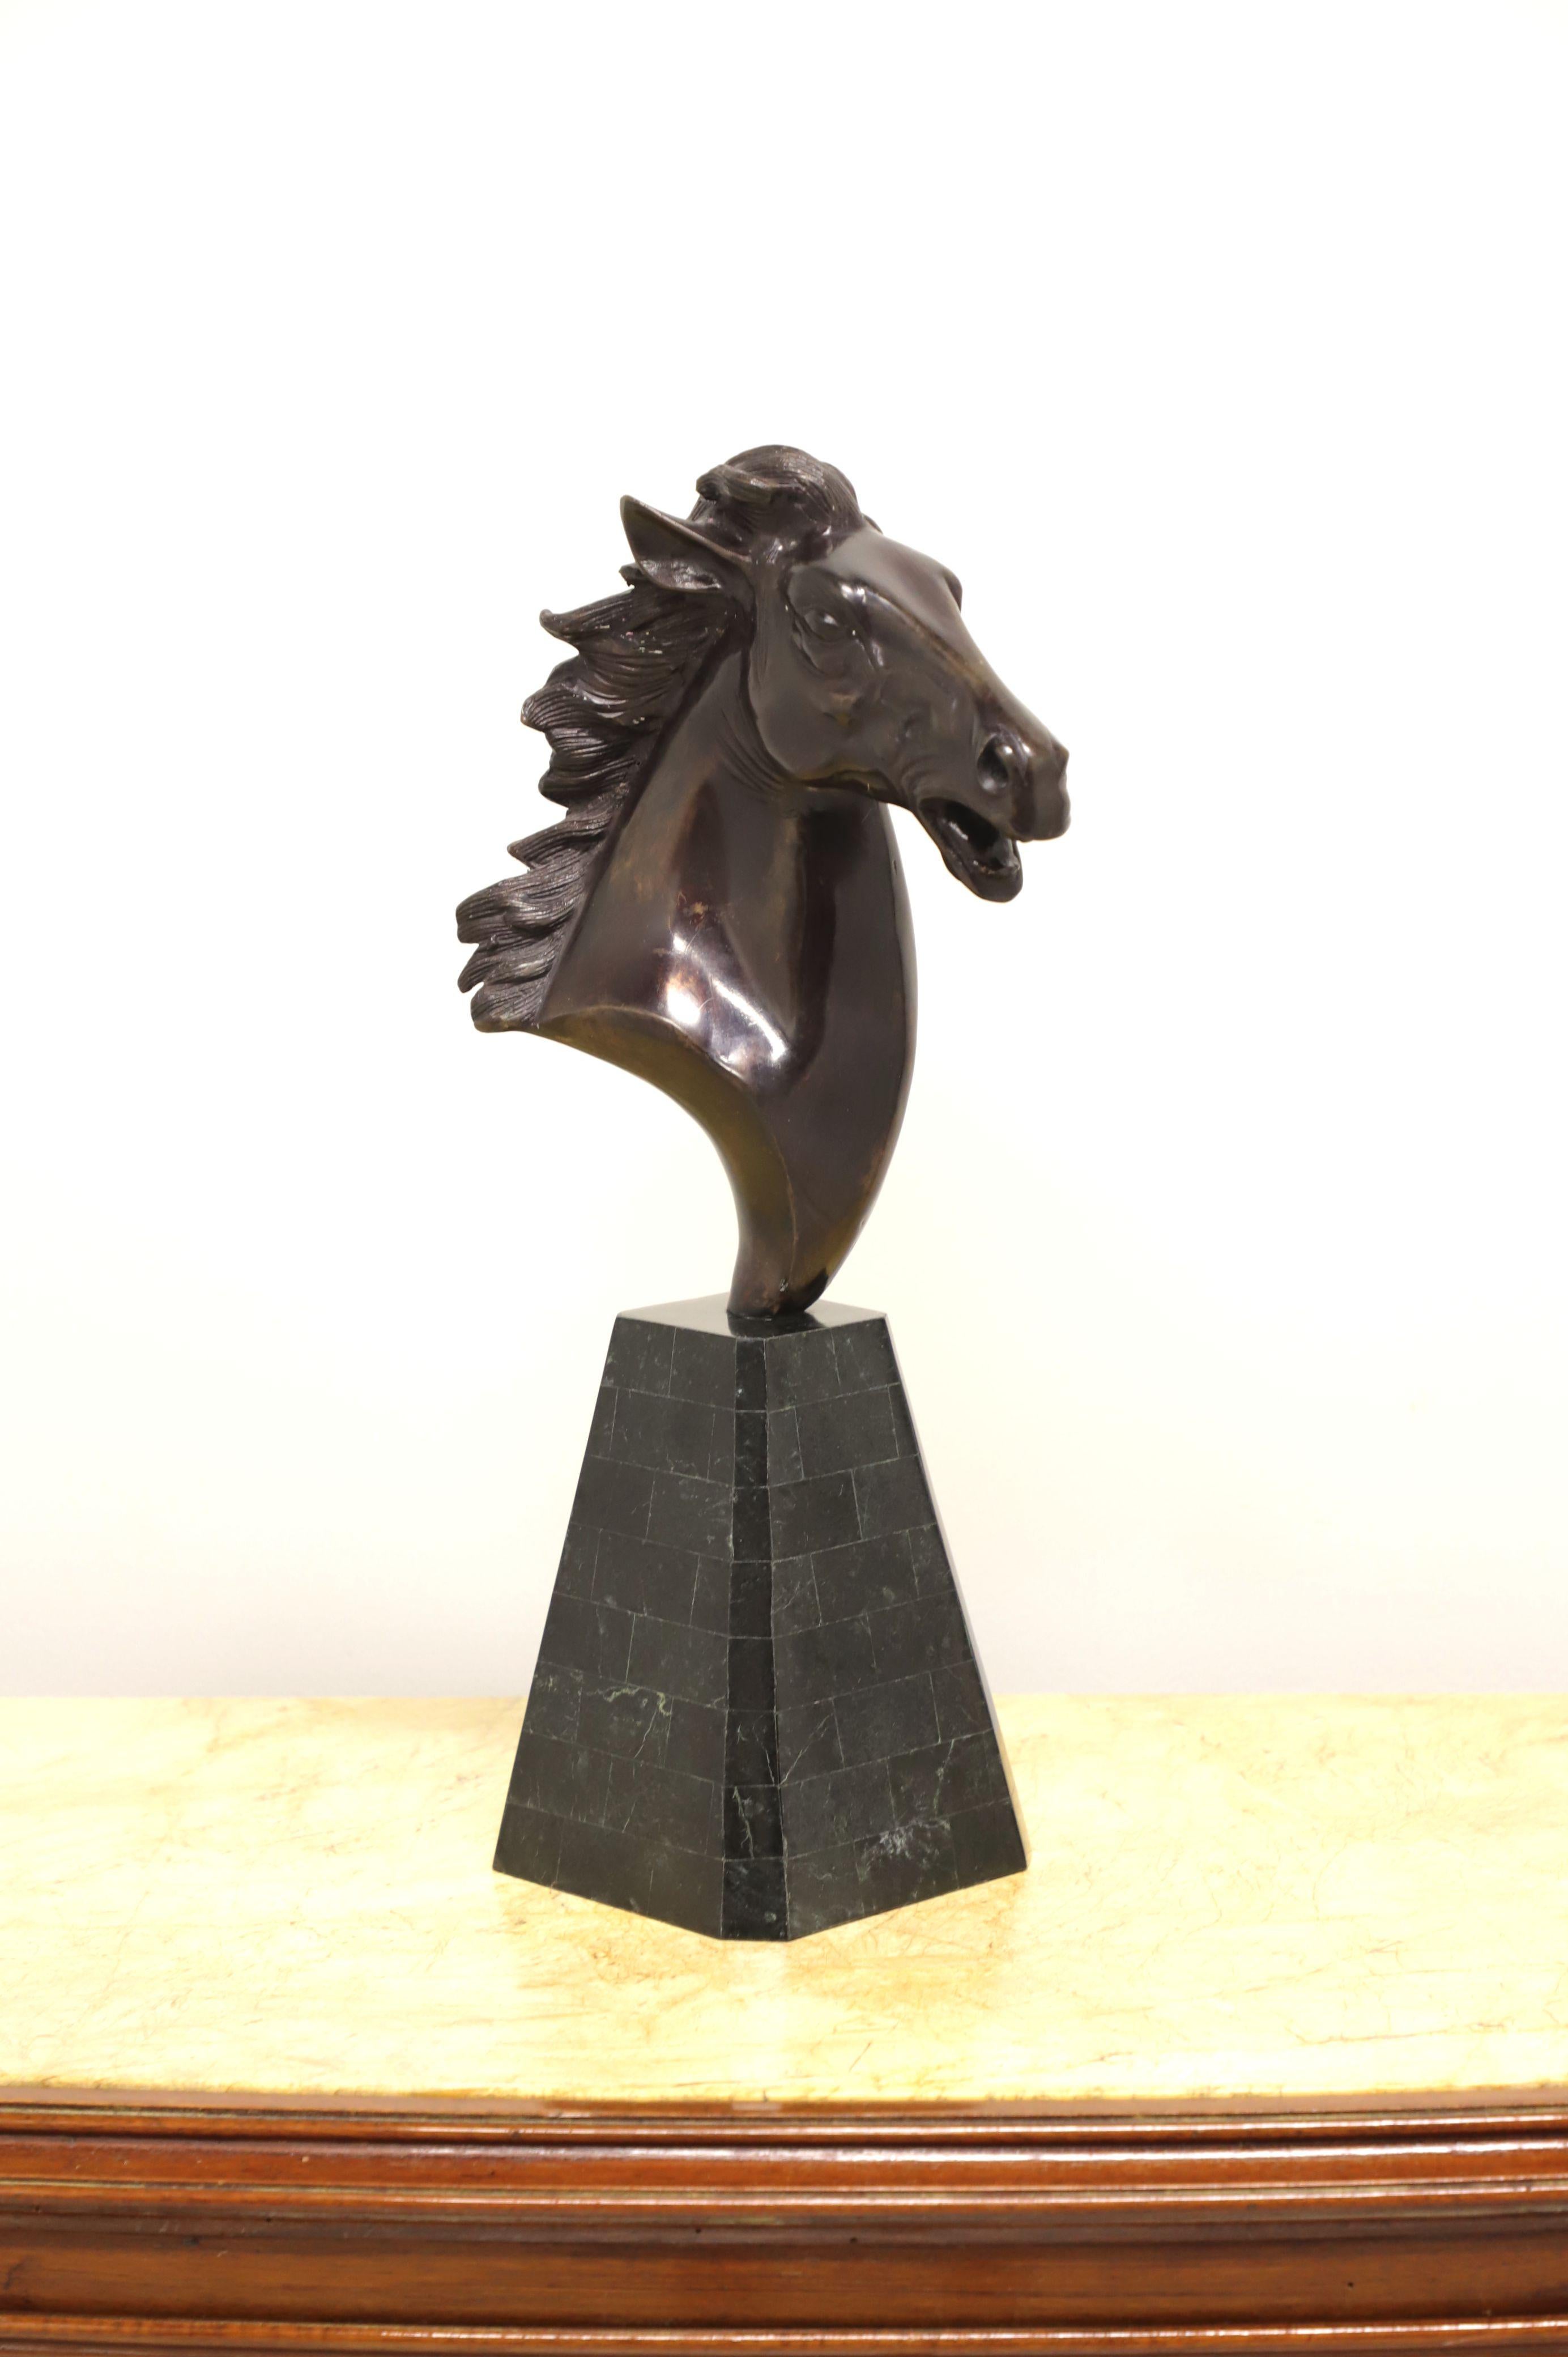 Eine Tischskulptur aus Metall, die einen Pferdekopf von Maitland Smith darstellt. Geformter Pferdekopf aus Metall auf einem mosaikartigen Sockel aus schwarzem Marmor. Hergestellt auf den Philippinen, Ende des 20. Jahrhunderts.

Maße: 6.25 B 6.25 T